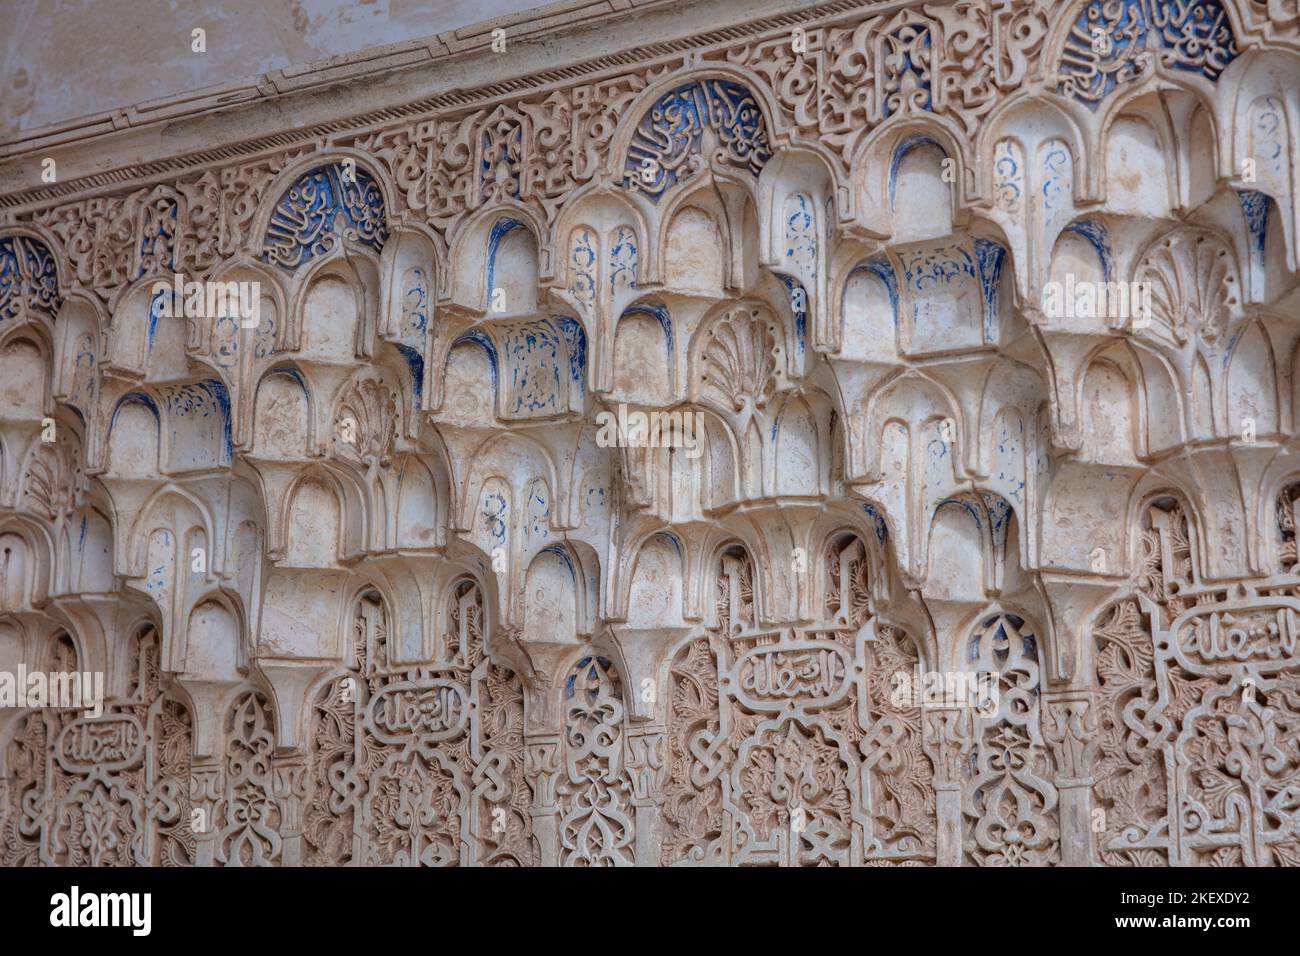 Islamische architektonische Details, Alhambra, Granada, Andalusien, Spanien Stockfoto